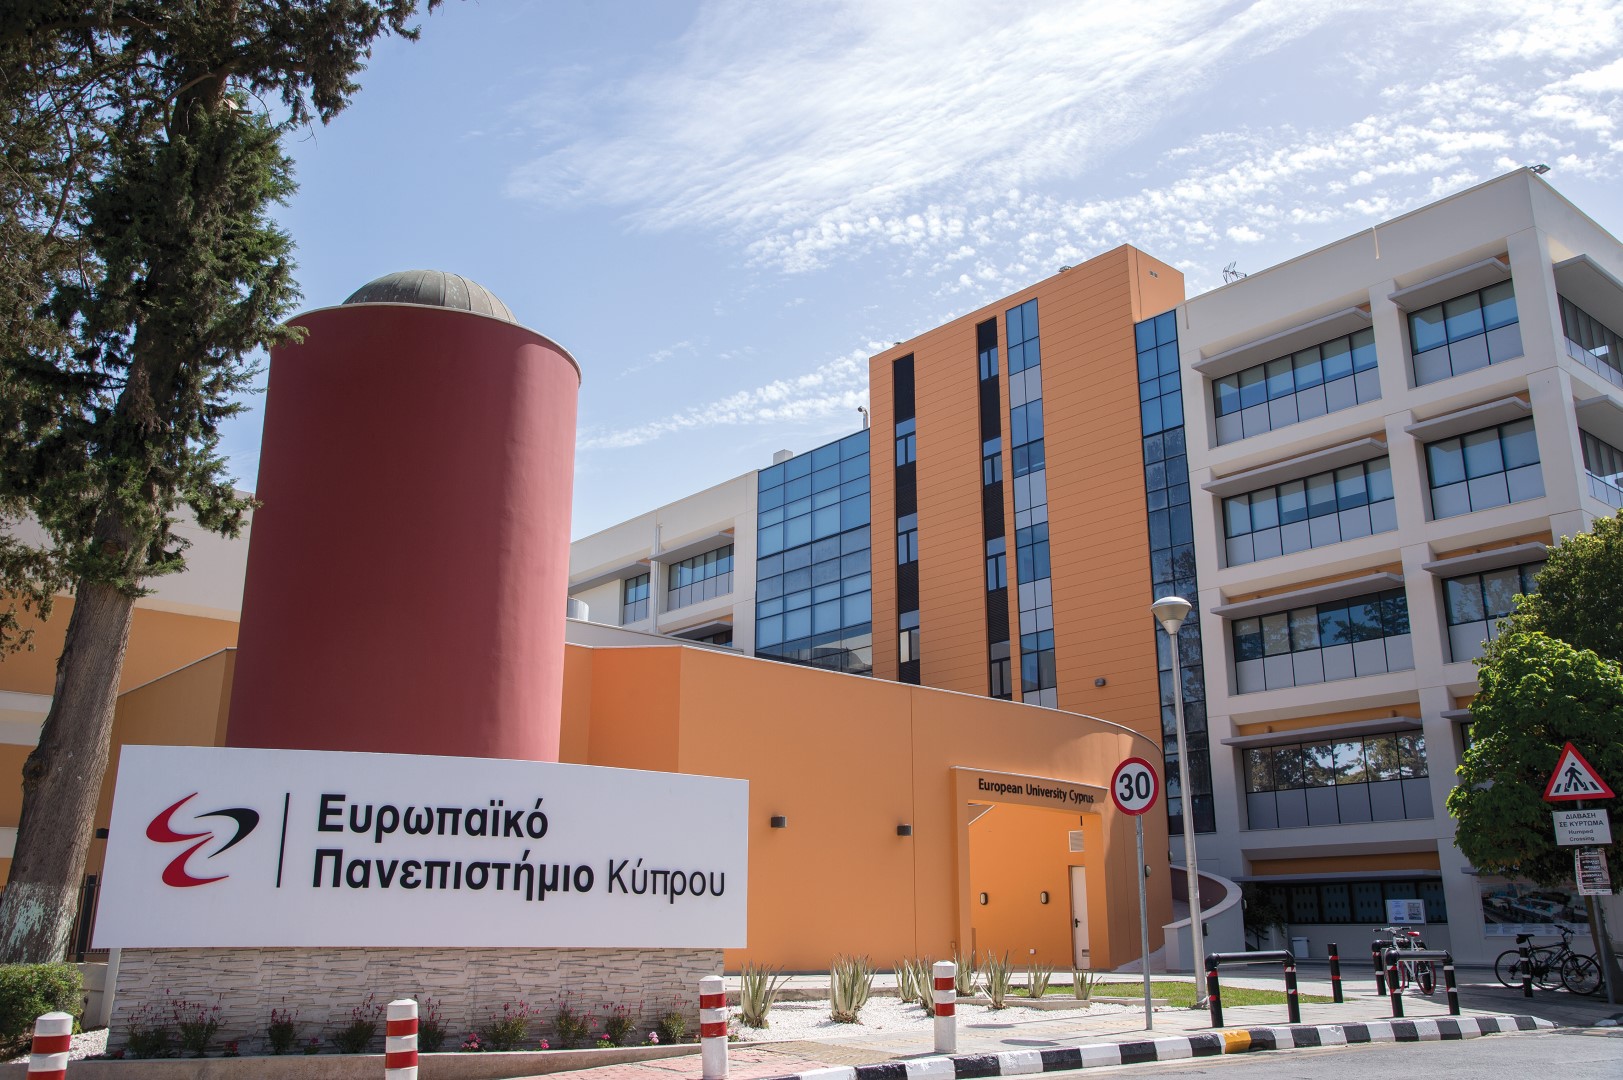 Τελετή Αποκαλυπτηρίων Προτομής του Ιπποκράτη στην Ιατρική Σχολή του Ευρωπαϊκού πανεπιστημίου Κύπρου